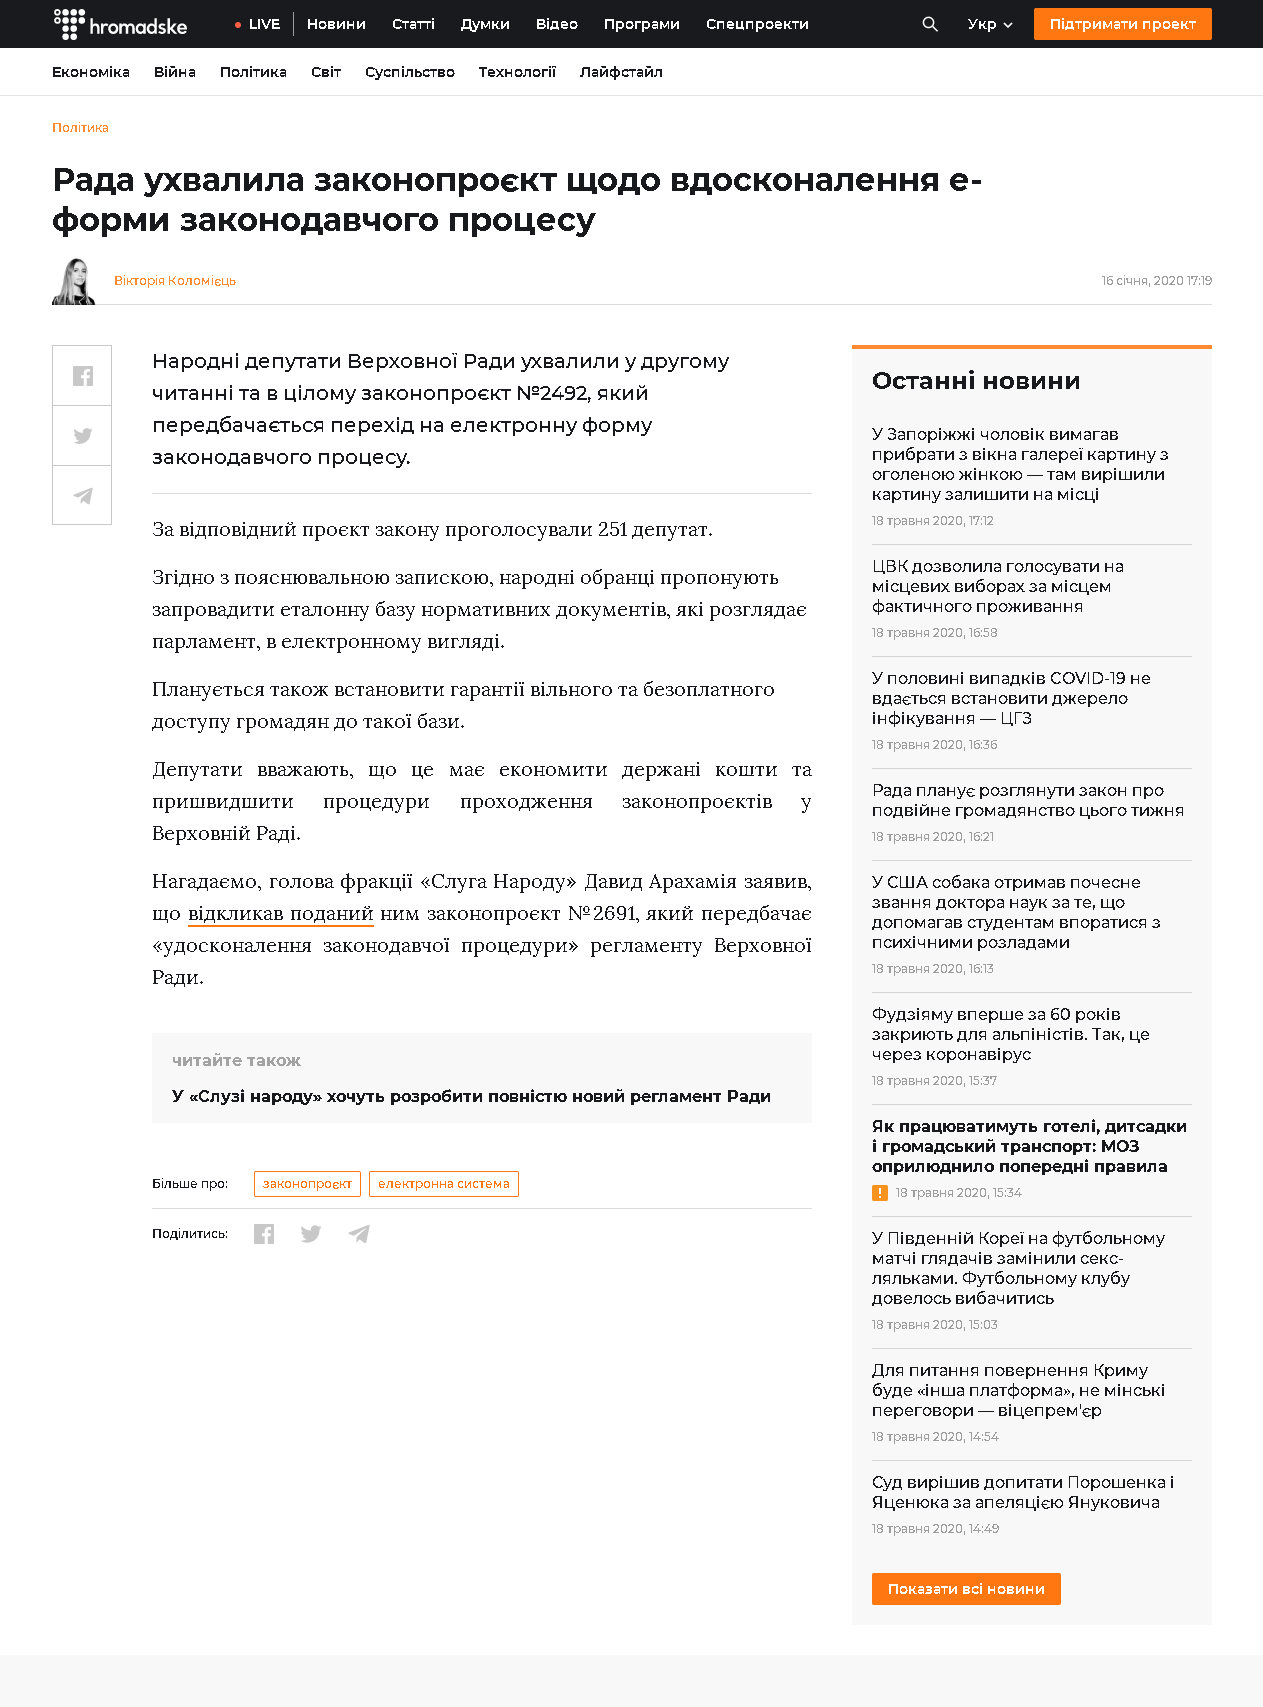 https://hromadske.ua/posts/rada-uhvalila-zakonoproyekt-shodo-vdoskonalennya-e-formi-zakonodavchogo-procesu